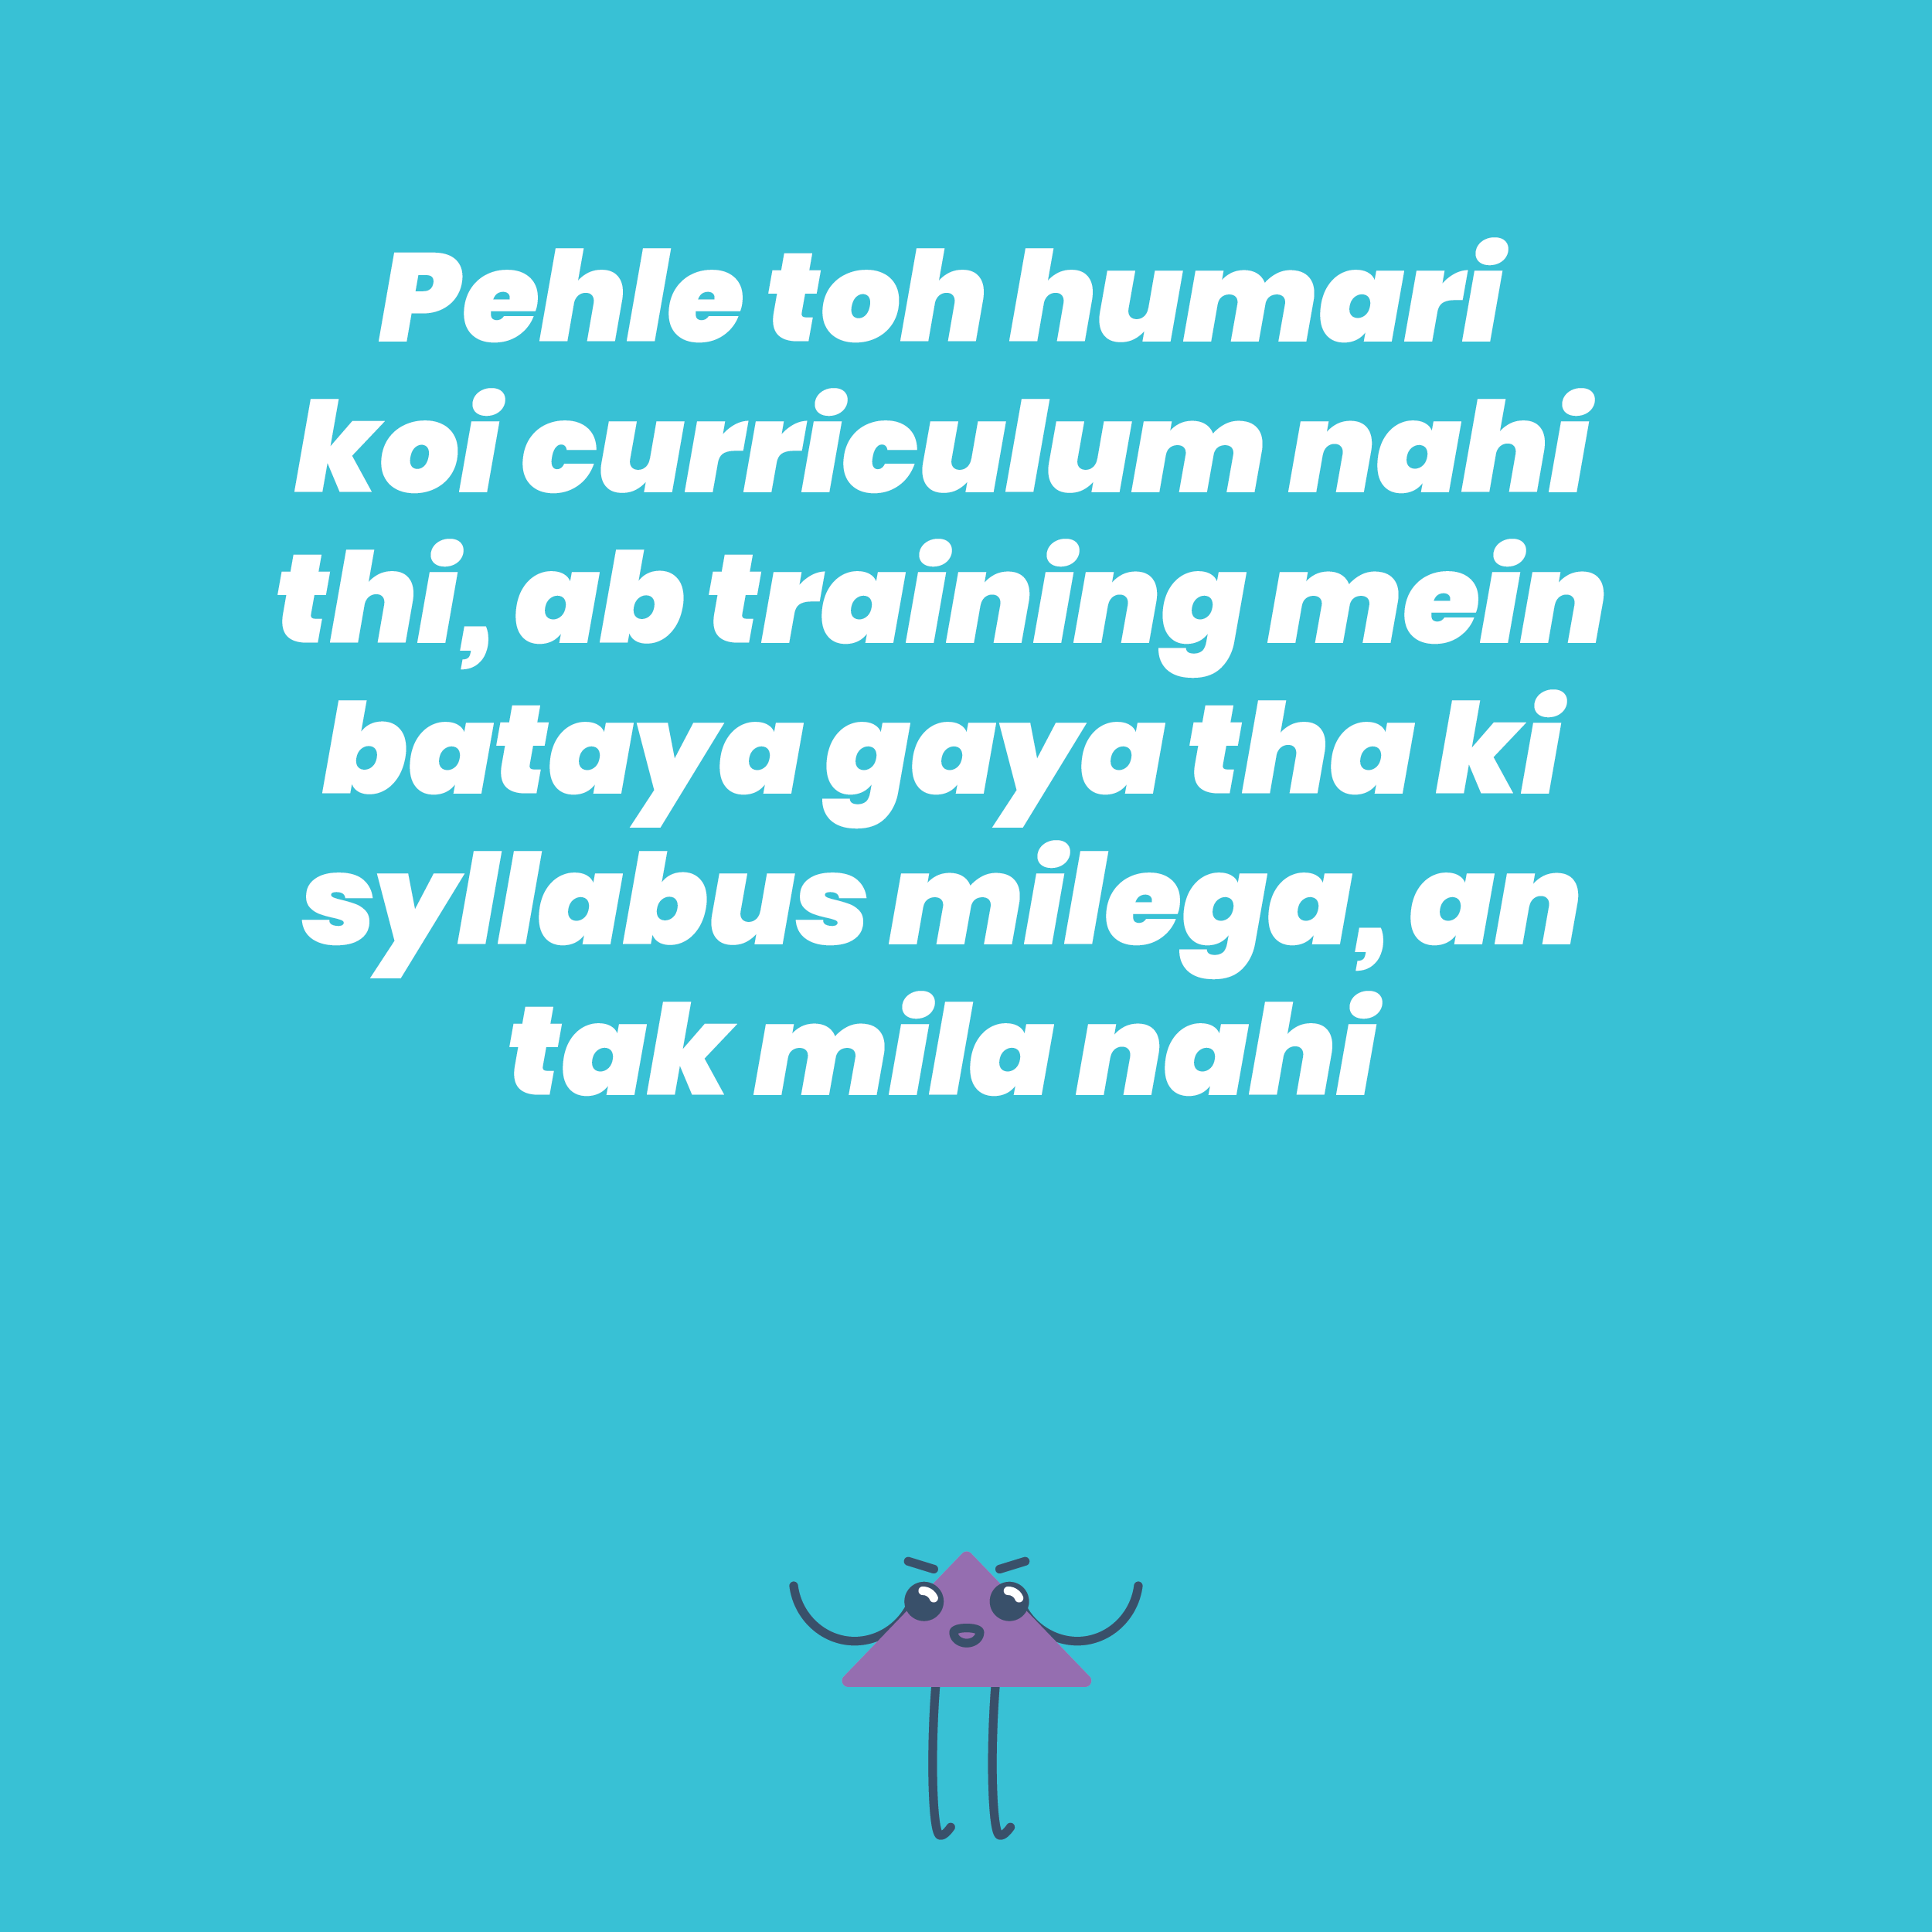 Pehle toh humari koi curriculum nahi thi, ab training mein bataya gaya tha ki syllabus milega, an tak mila nahi